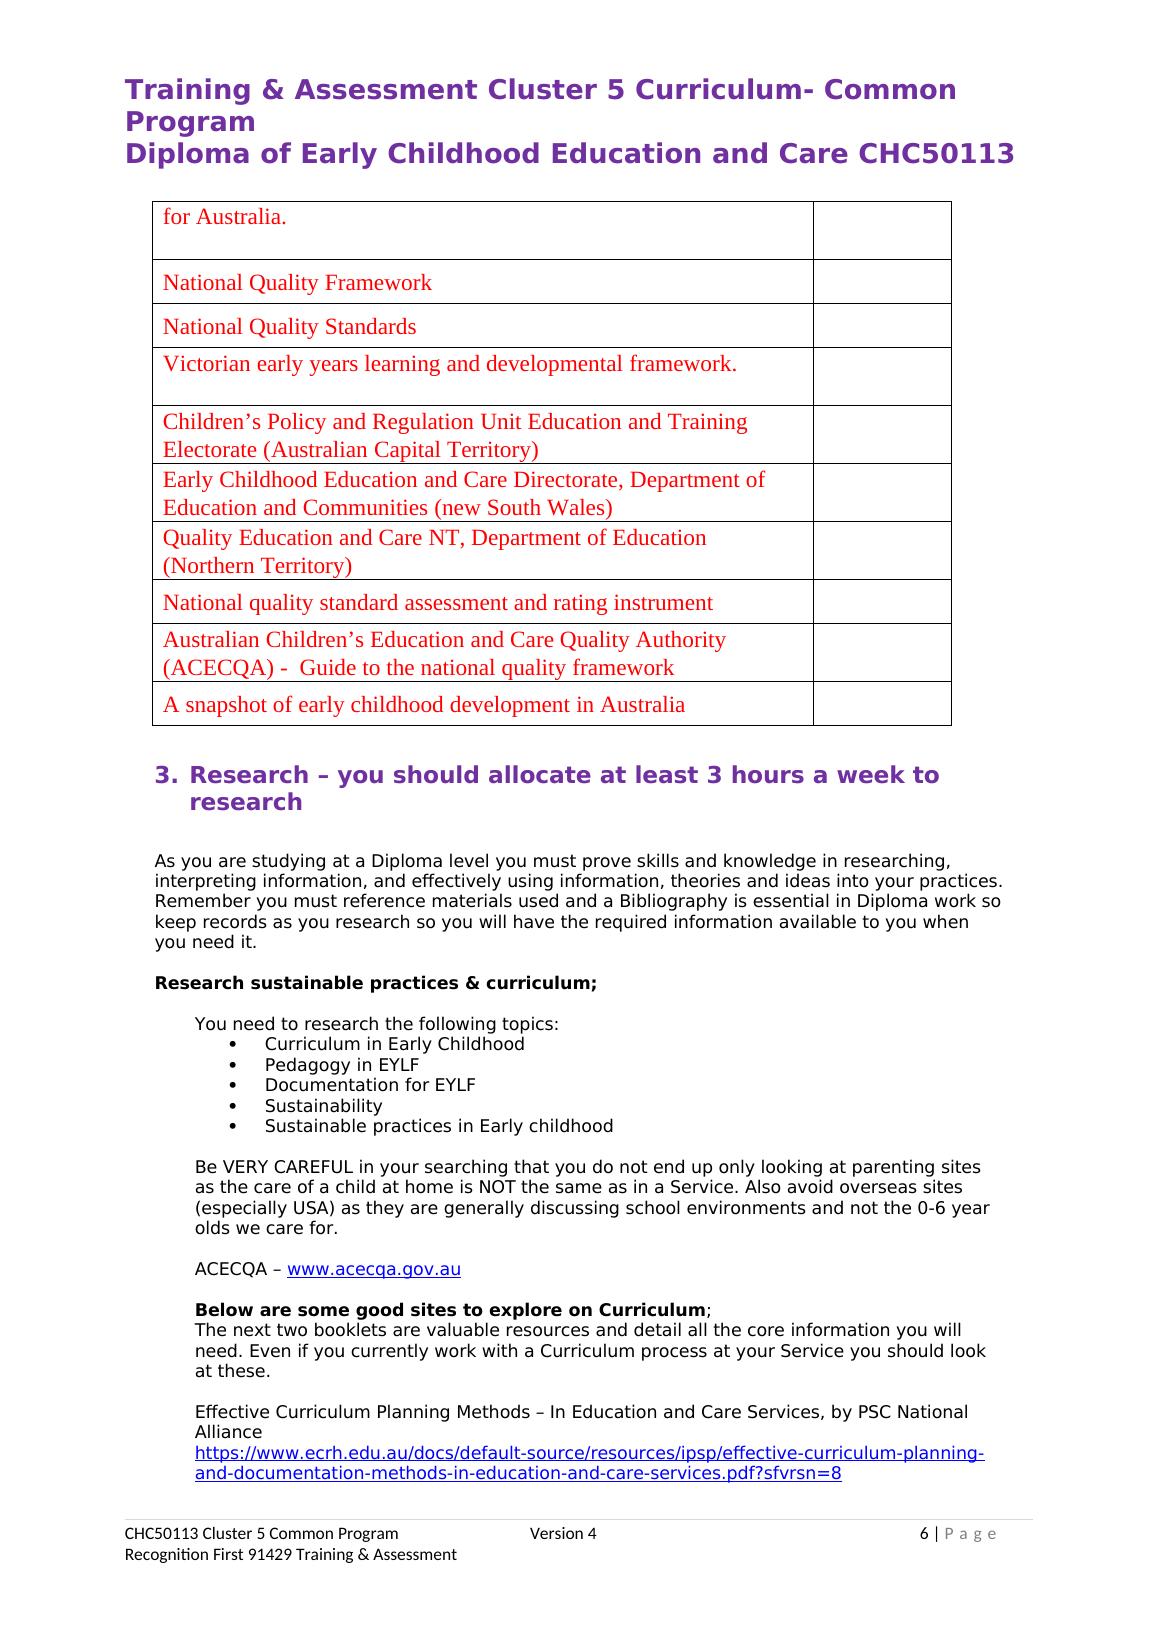 Training & Assessment Cluster 5 Curriculum- Common Program_6